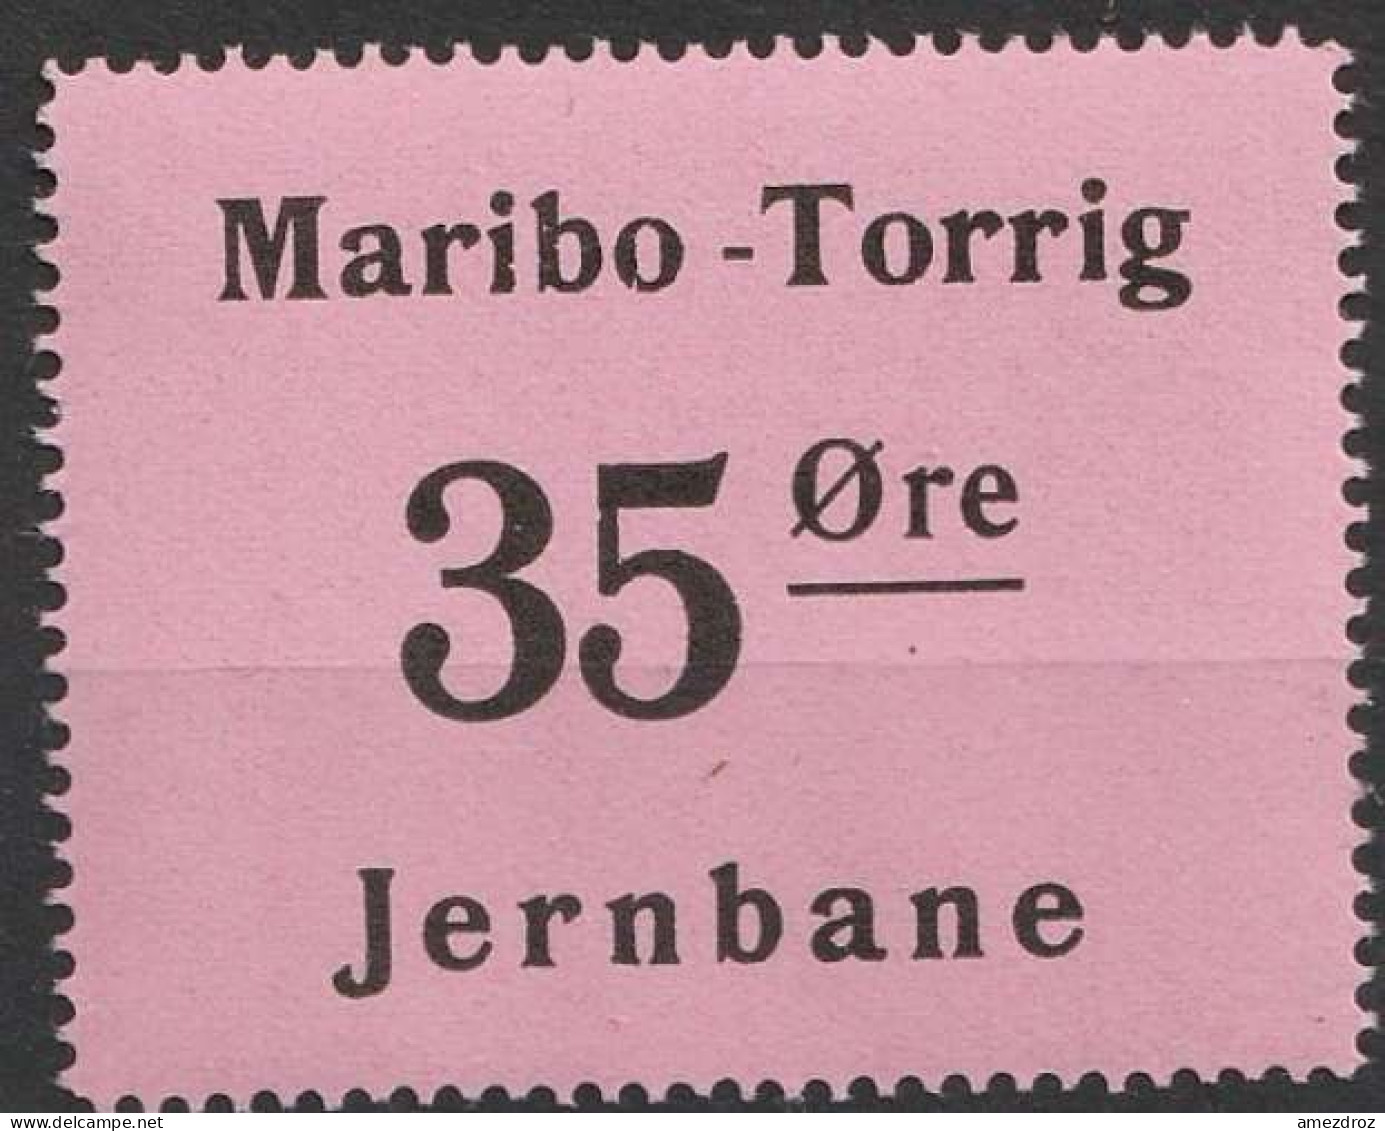 Chemin De Fer Danois ** - Dänemark Railway Eisenbahn Maribo - Torrig Jernbane   (A13) - Pacchi Postali